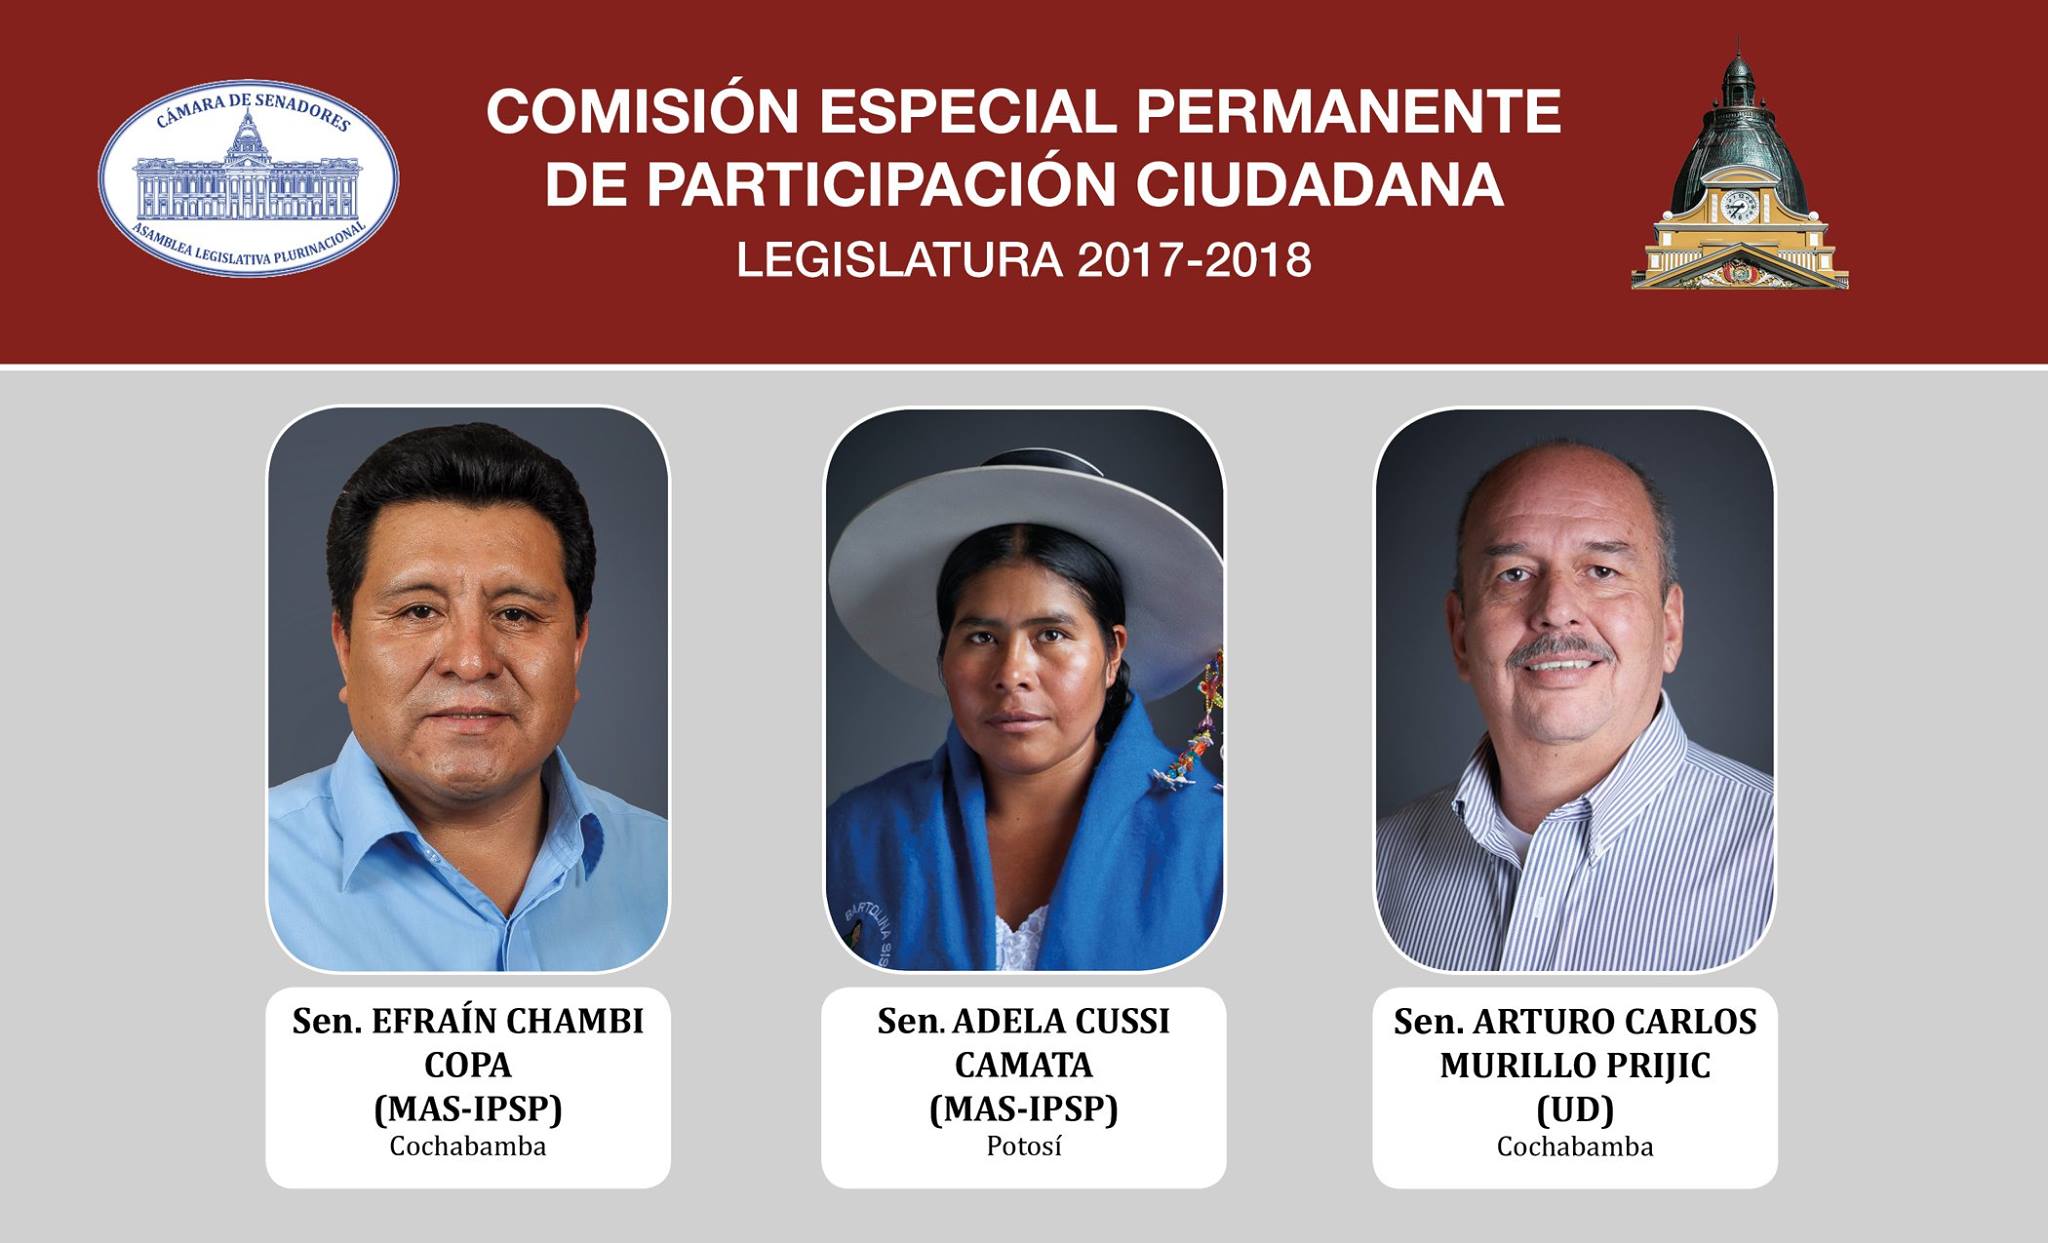 Senado designa miembros de la Comisión Especial Permanente de Participación Ciudadana por la Legislatura 2017 - 2018